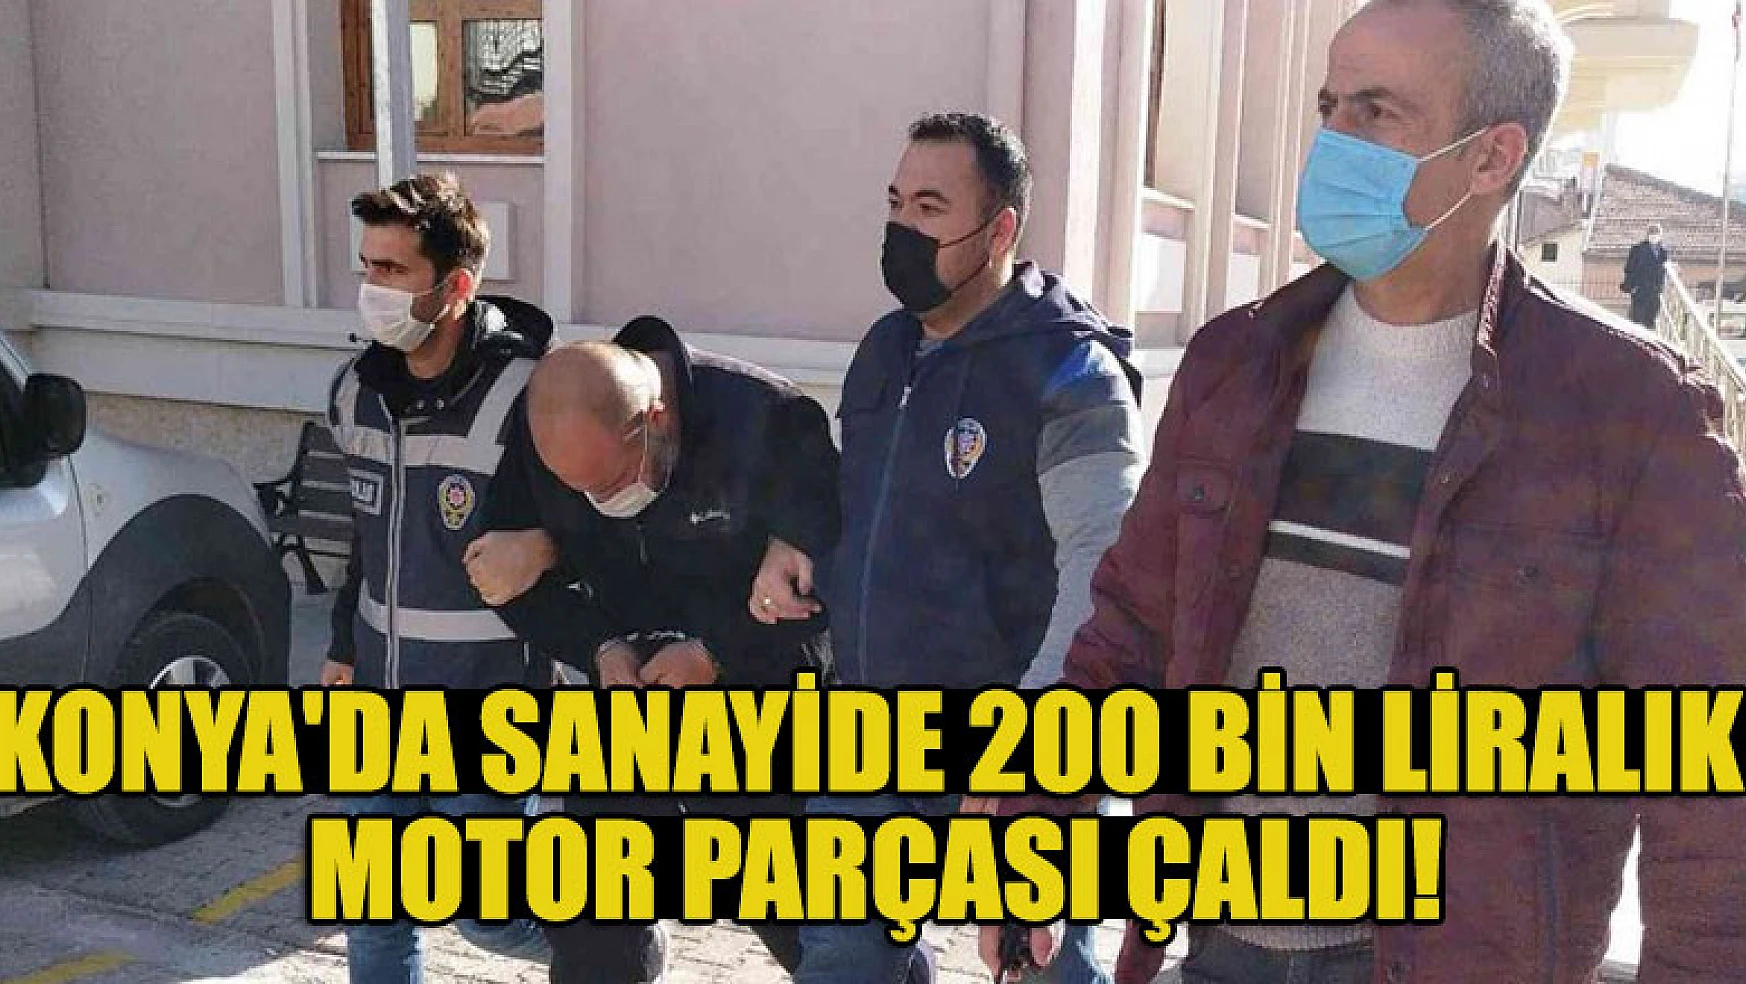 Konya'da sanayide 200 bin liralık motor parçası çalan şüpheli polisten kaçamadı